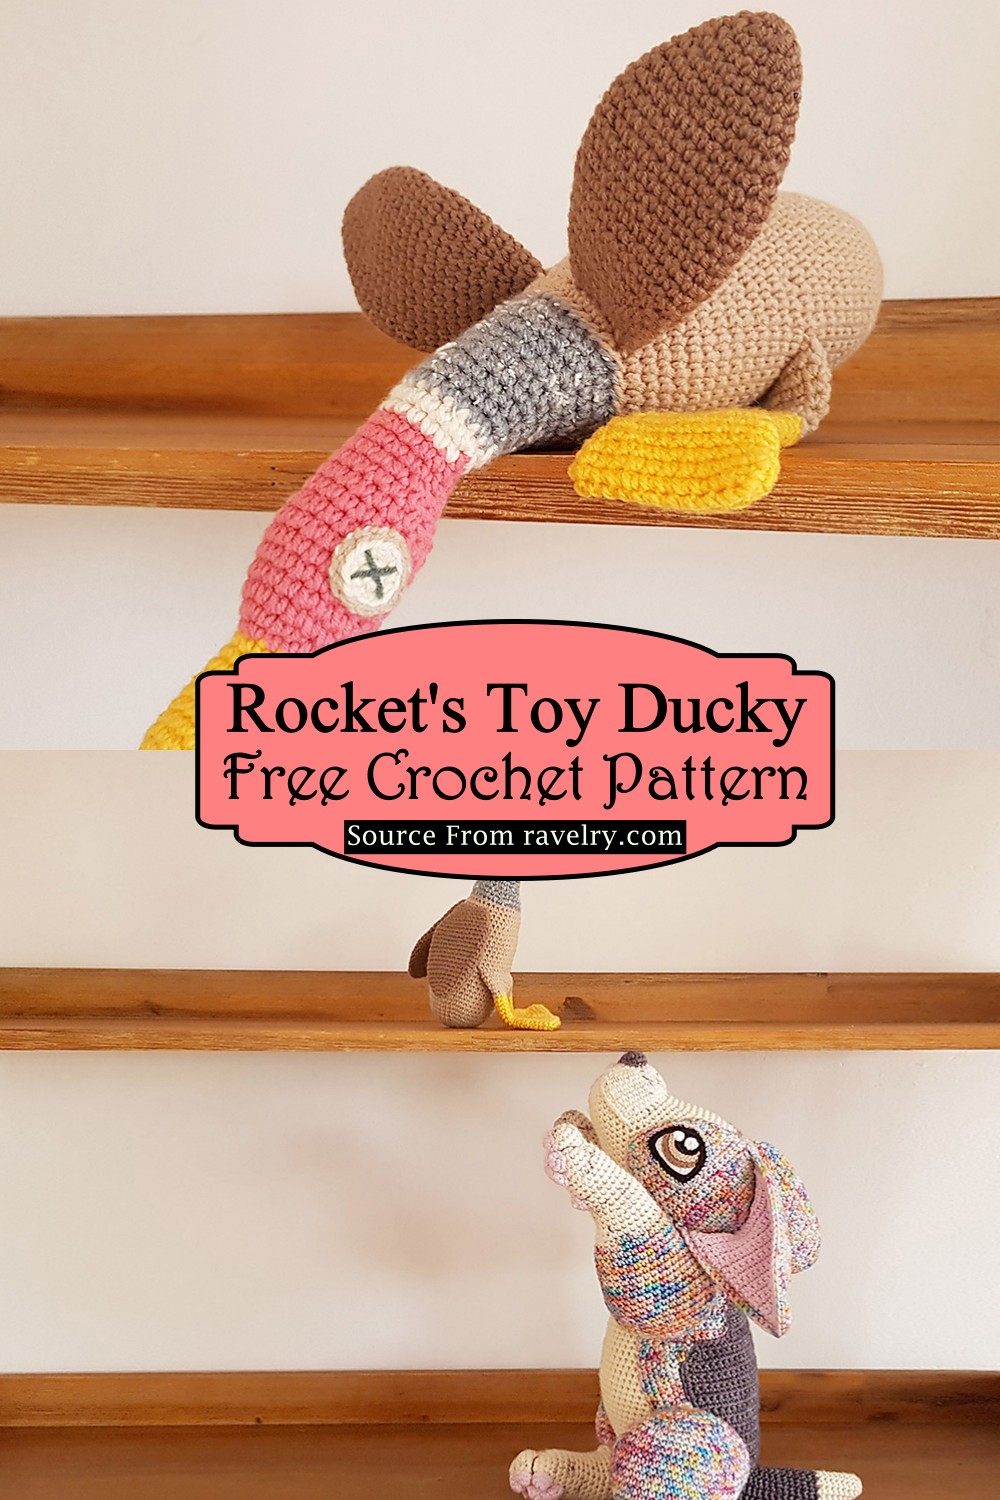 Crochet Rocket's Toy Ducky Pattern